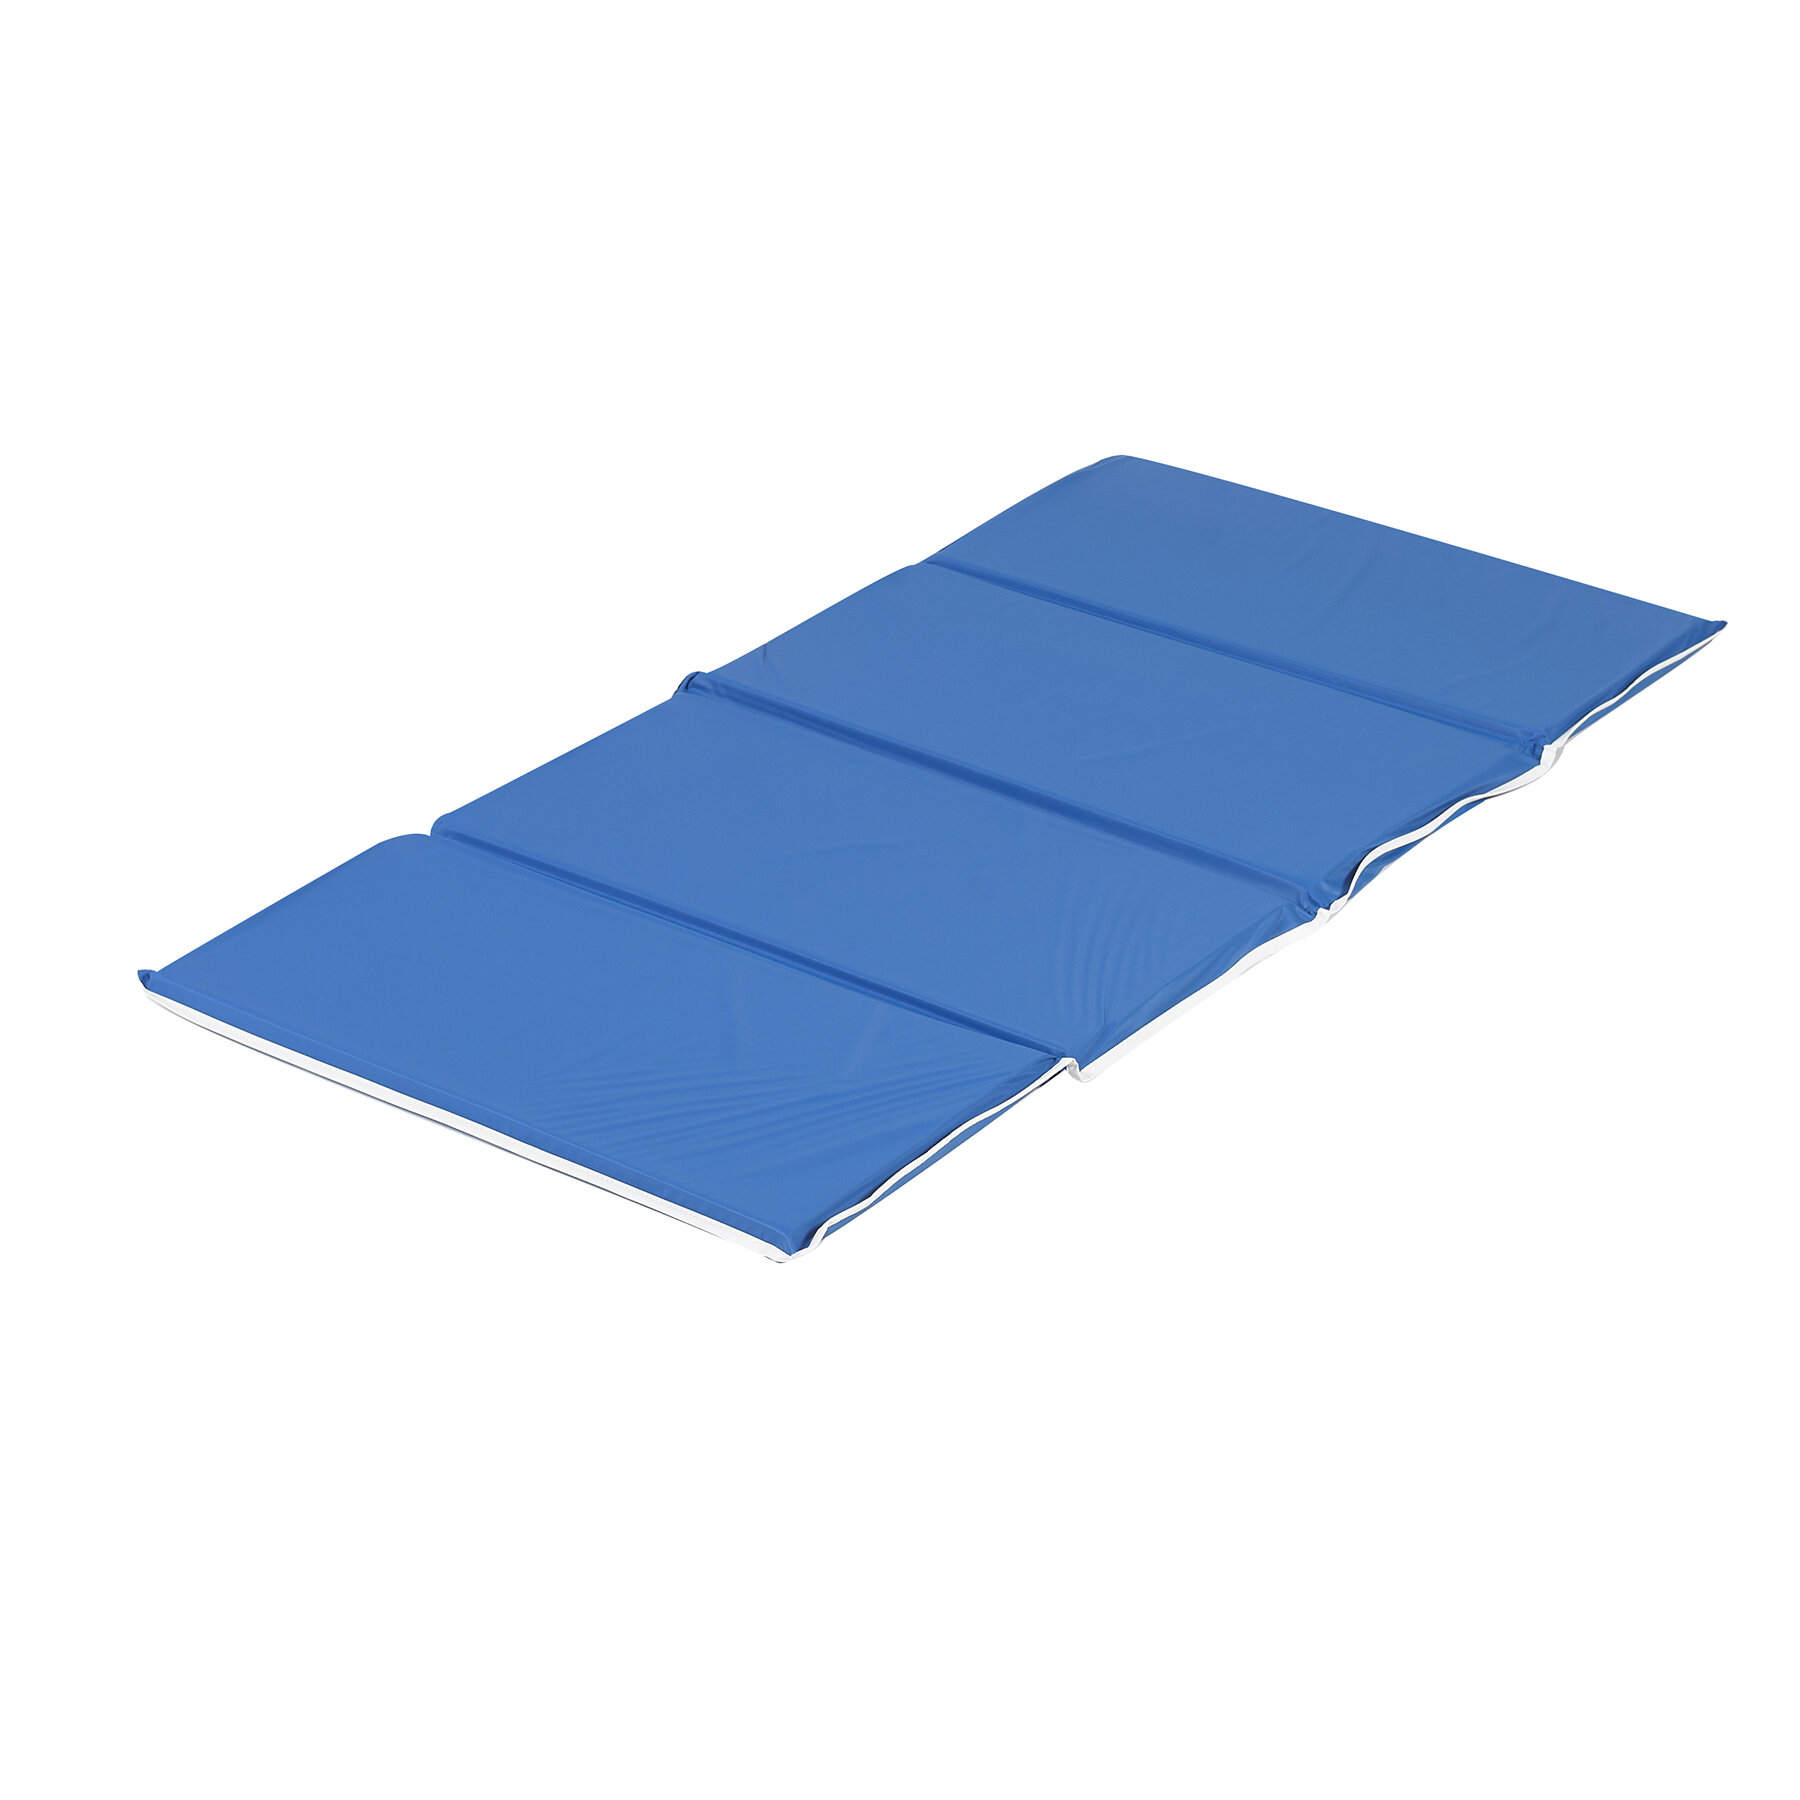 Teal/Blue Children's Factory Inc Germ Guard Rest Folding Mat Single 